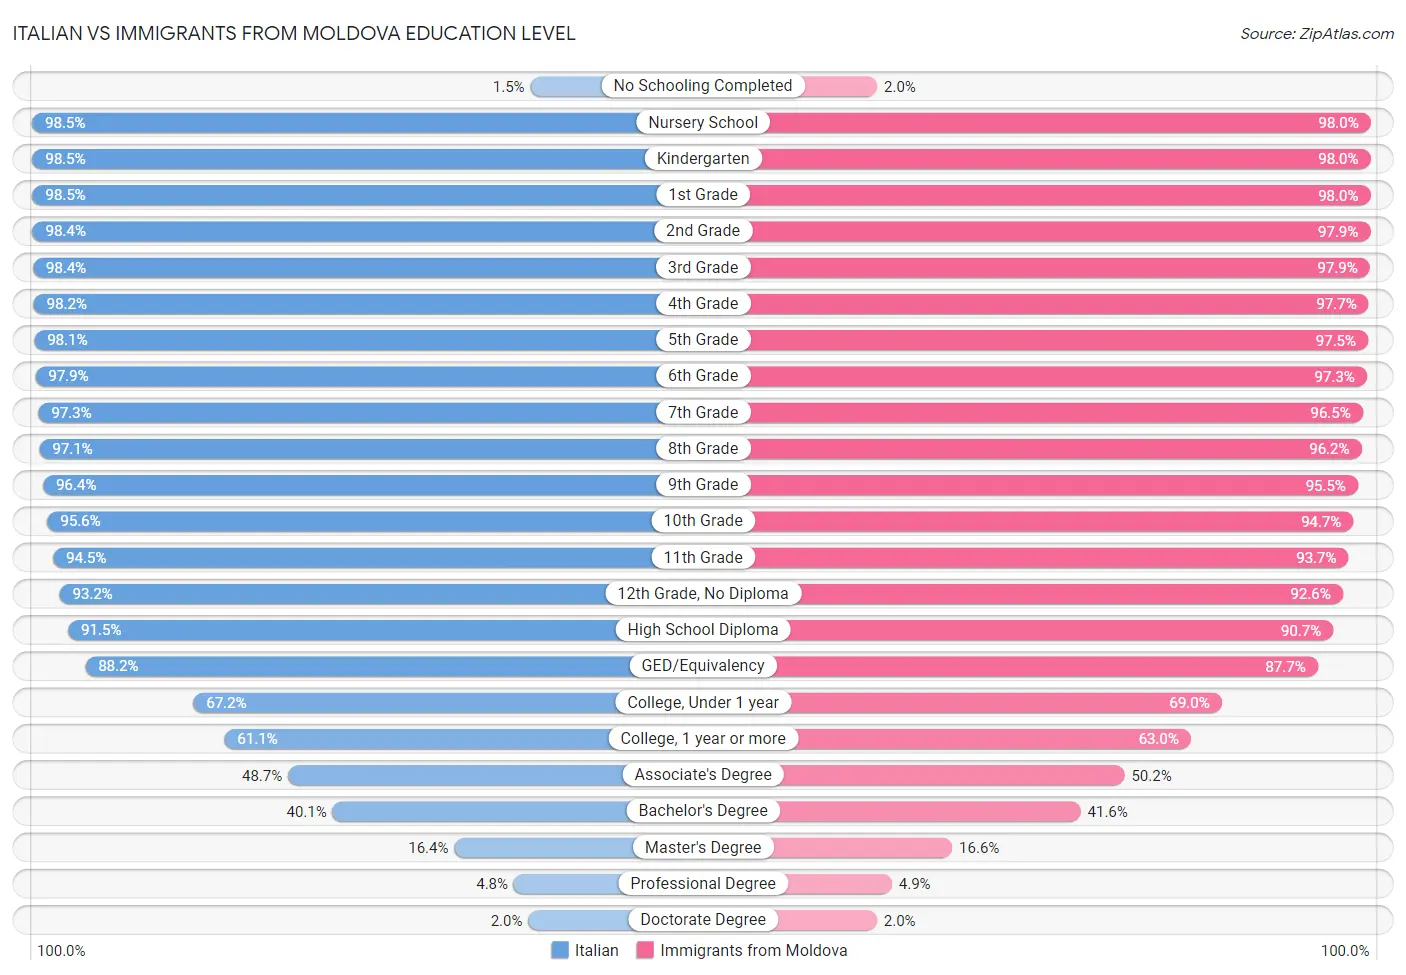 Italian vs Immigrants from Moldova Education Level